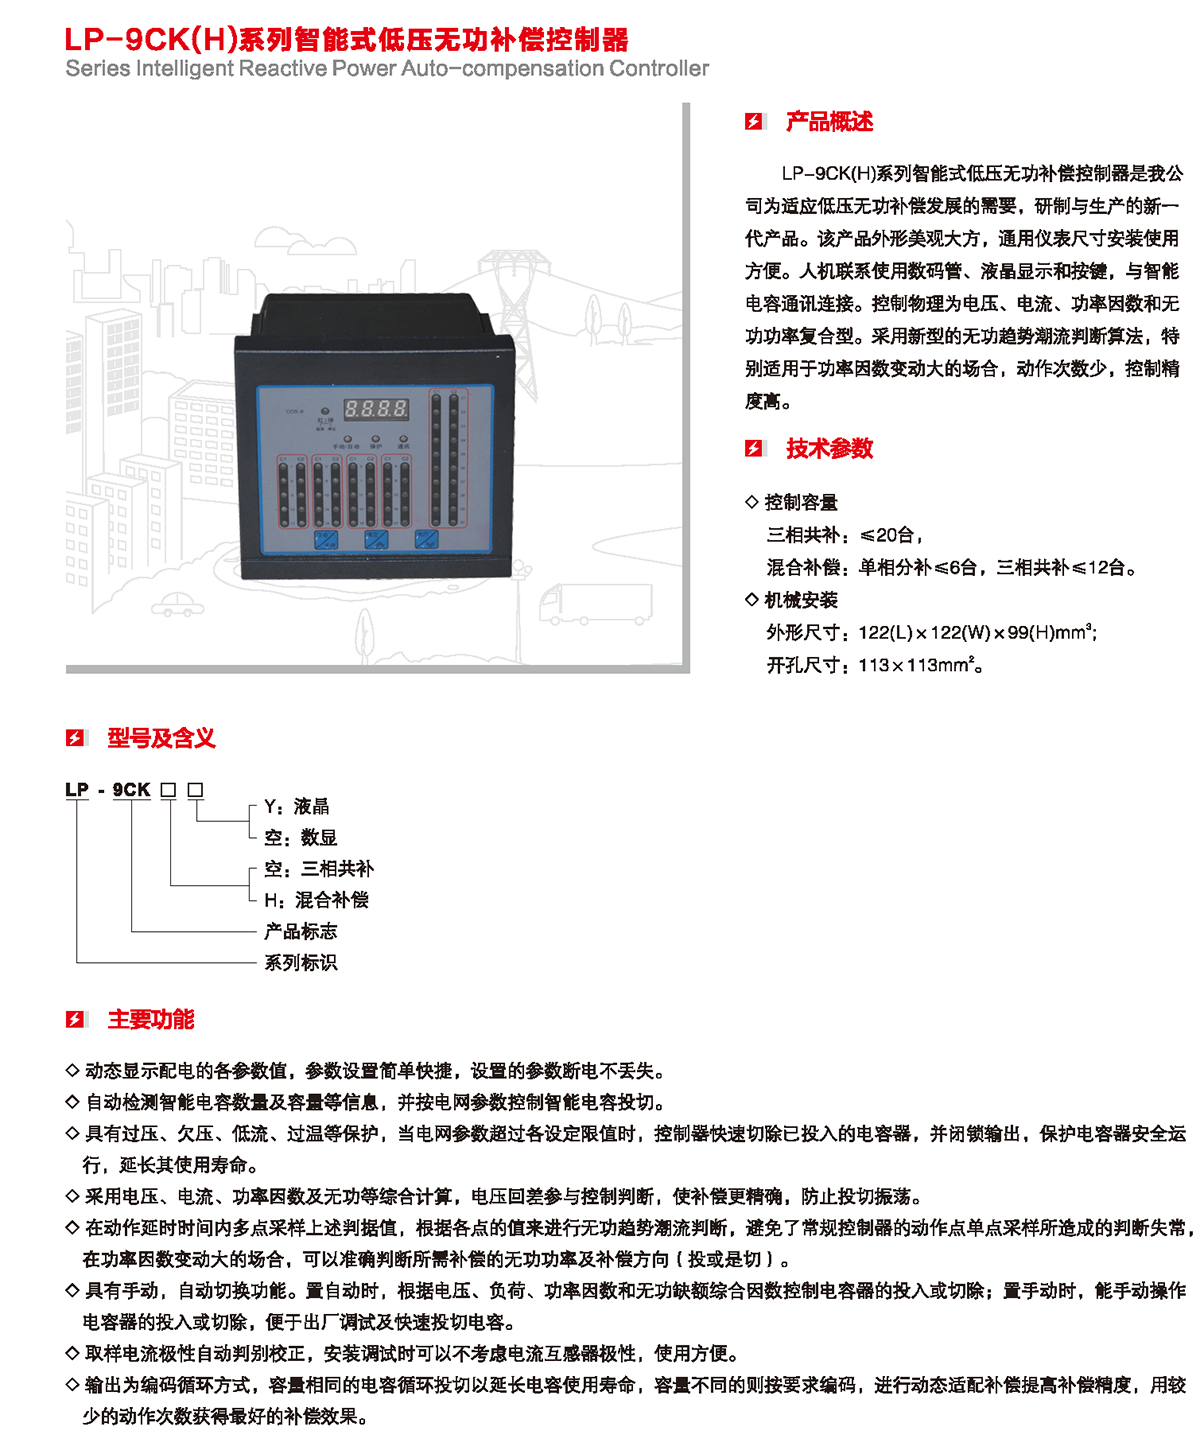 LP-9CK（H）系列智能式低壓無功補償控制器產品詳情